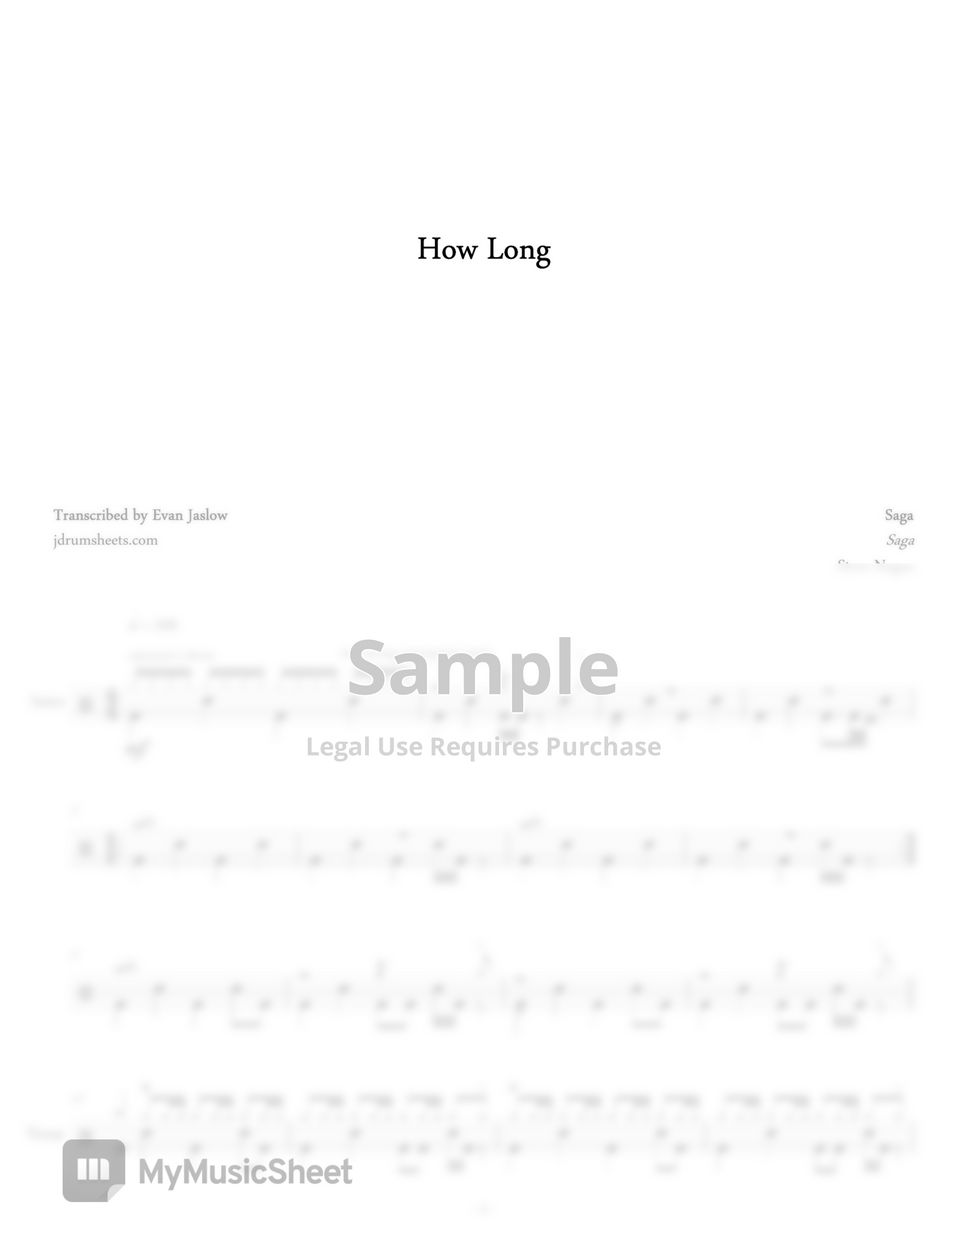 Saga - How Long by Evan Jaslow